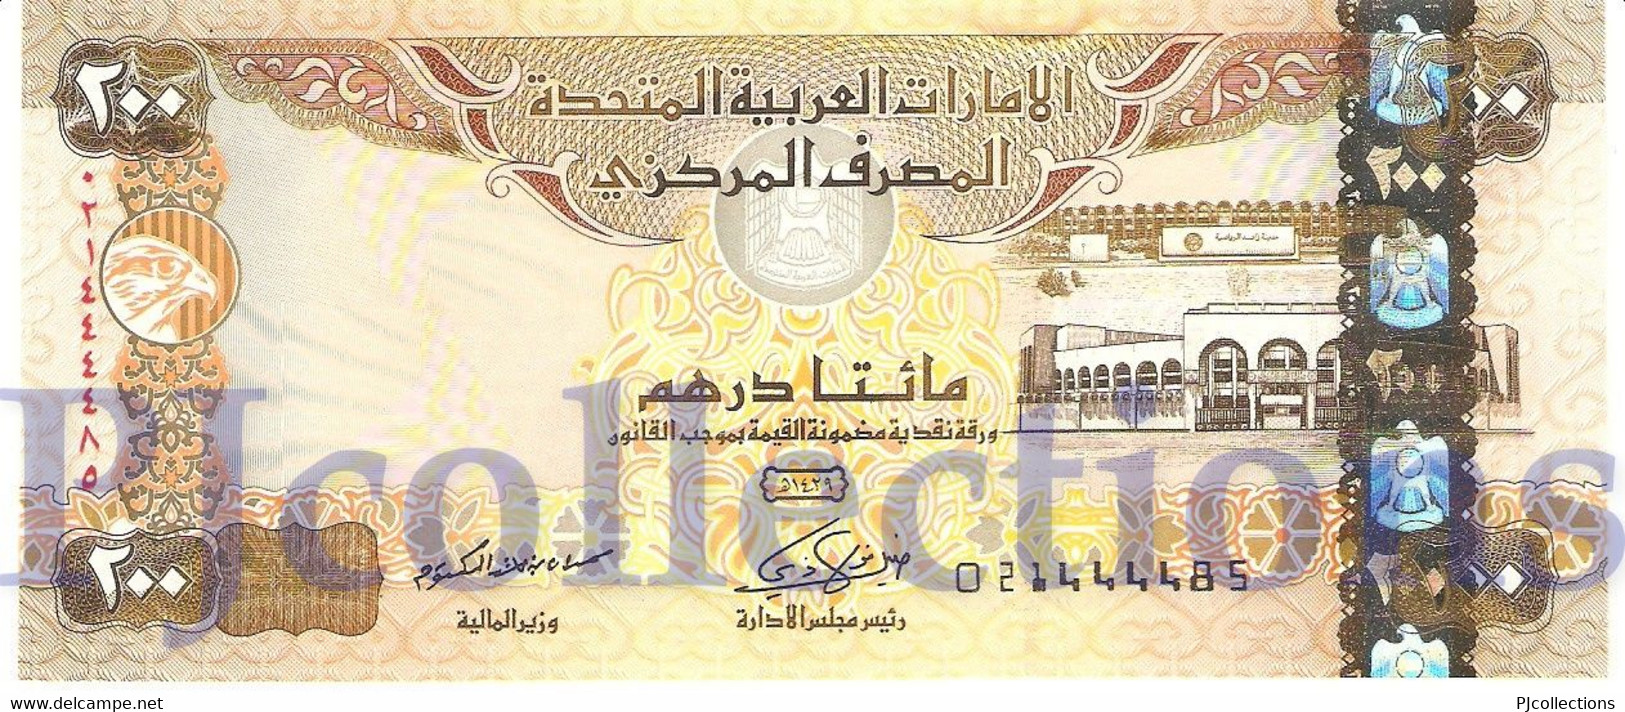 UNITED ARAB EMIRATES 200 DIRHAMS 2008 PICK 31b UNC - Ver. Arab. Emirate